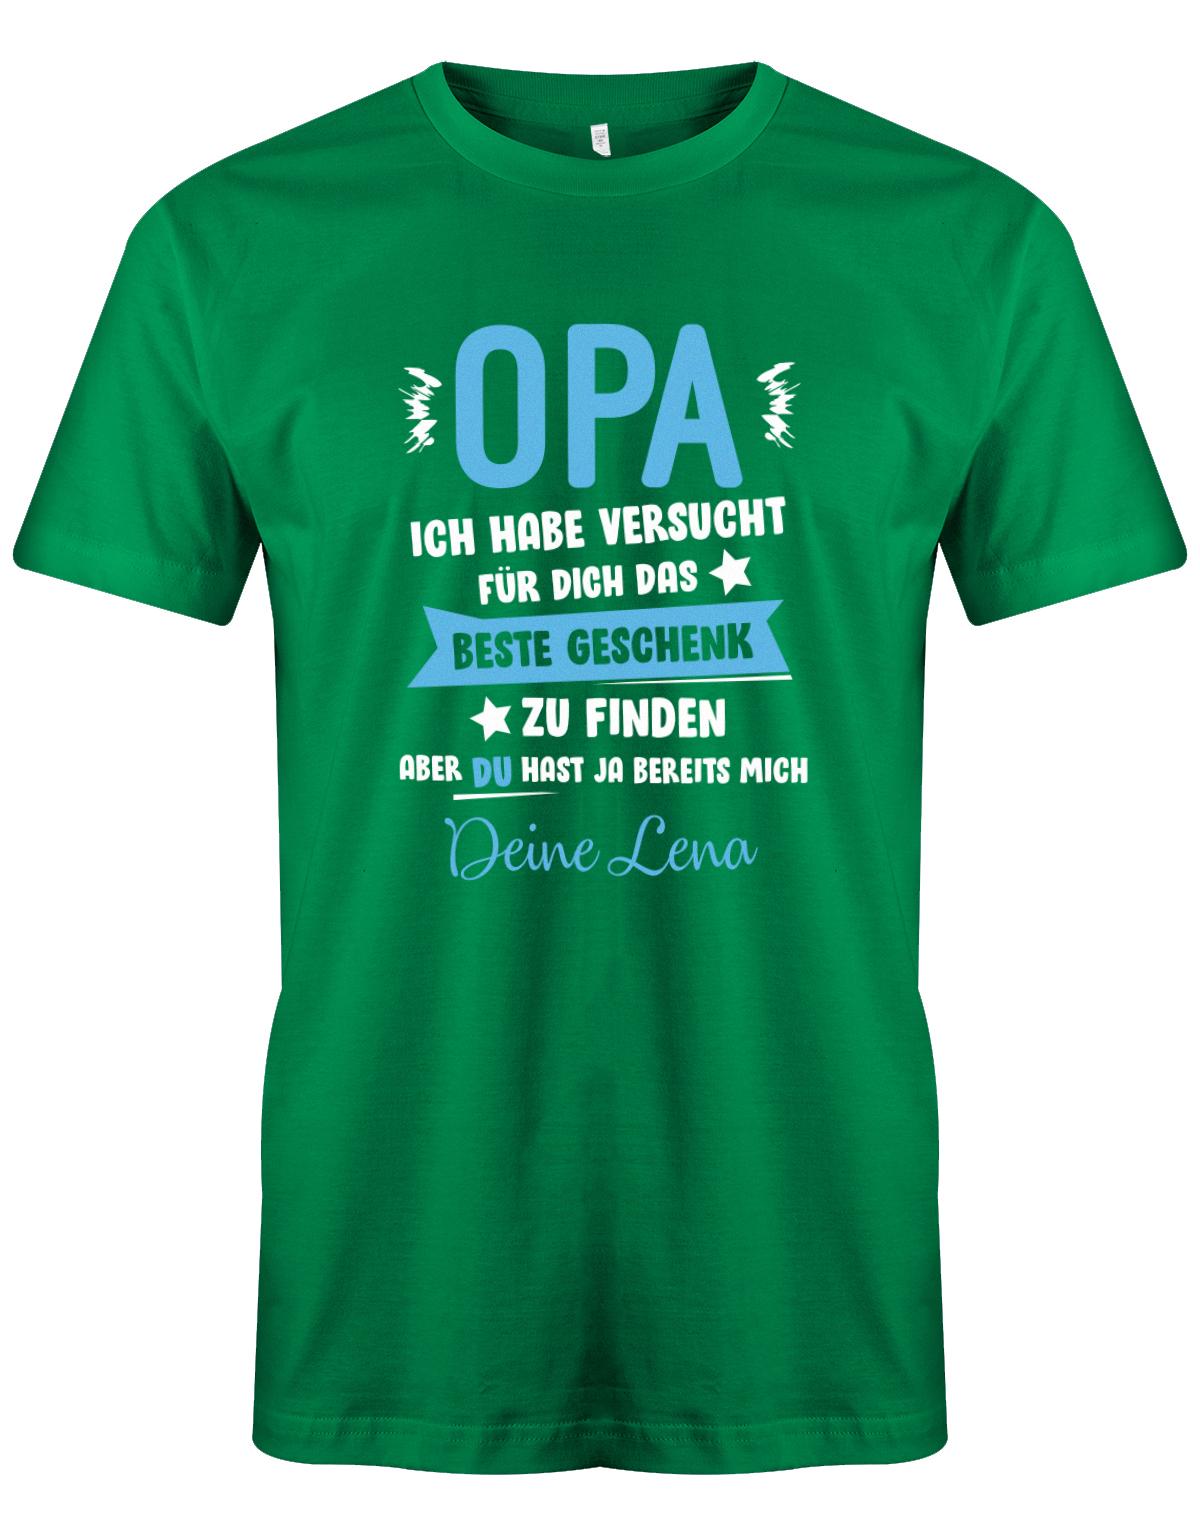 Opa Shirt personalisiert - Opa ich habe versucht, das beste Geschenk für dich zu finden, aber du hast ja bereits mich. Name vom Enkel.  Grün